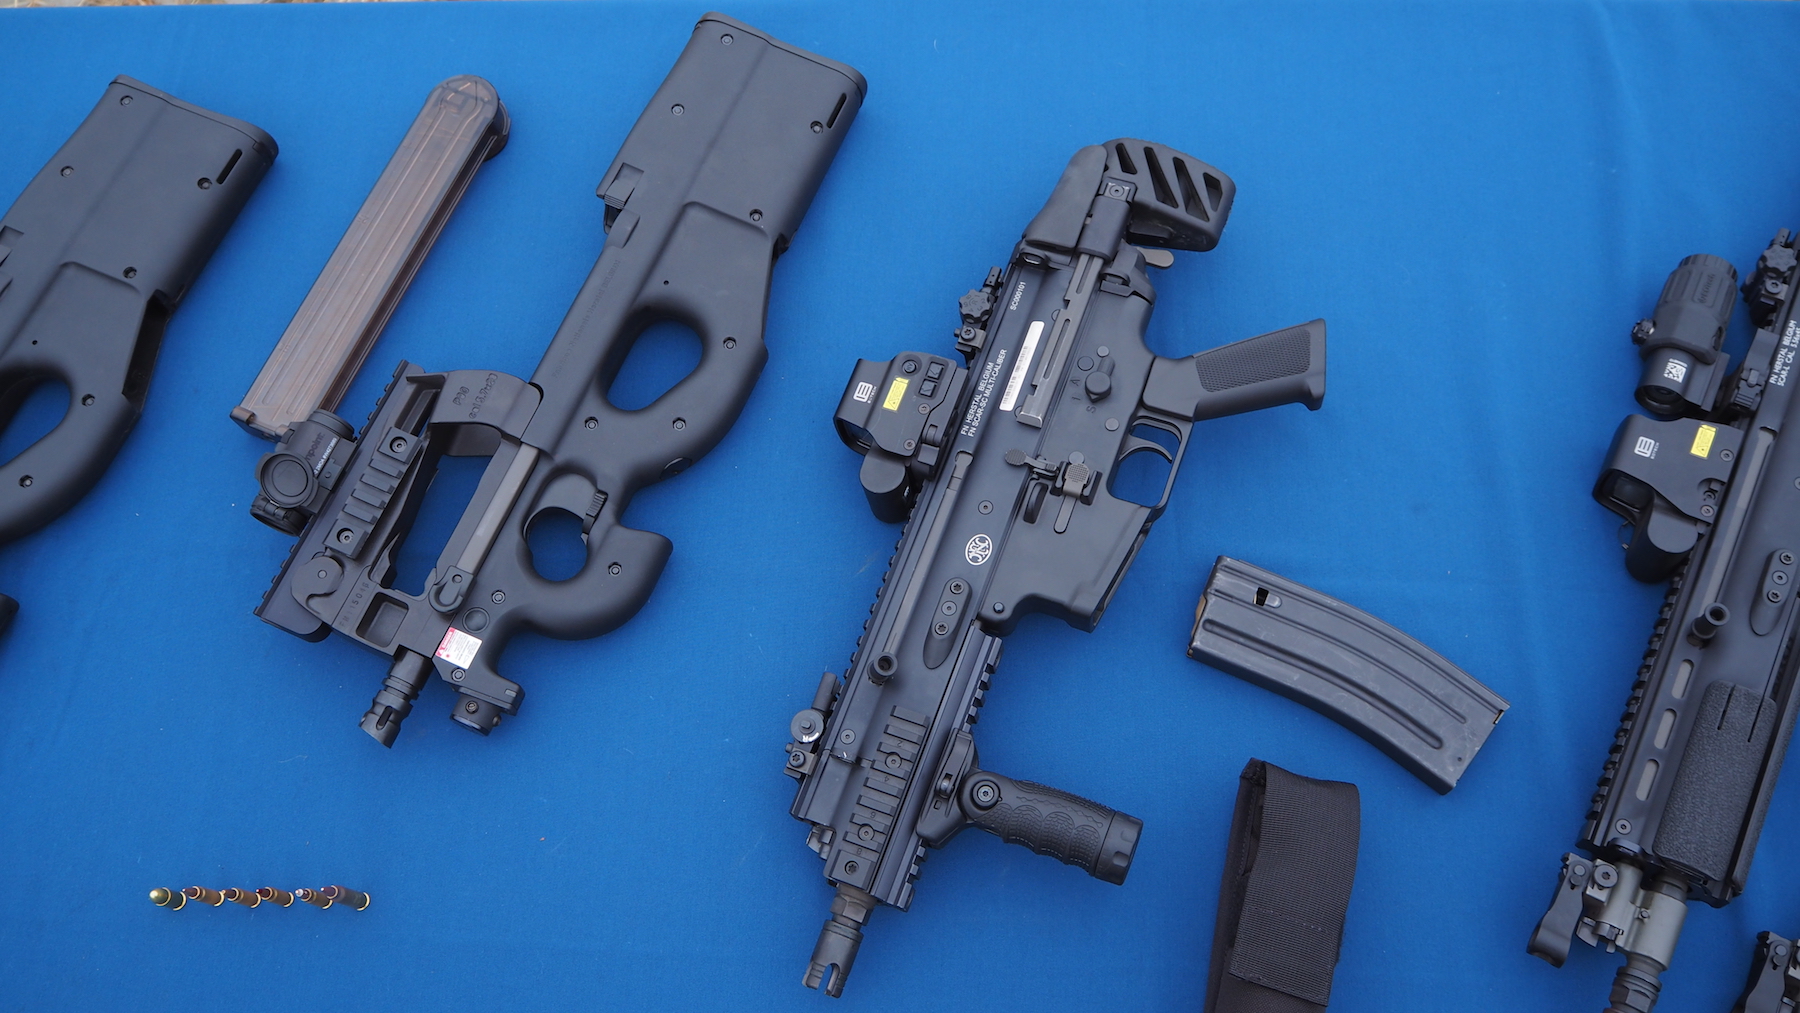 Porównanie wymiarów pistoletu maszynowego FN P90 (po lewej) i subkarabinka SCAR-SC (po prawej) pokazuje jak zwarta jest to broń, przy sile ognia jaką daje amunicja 5,56 mm lub .300 BLK. Fot. J.Sabak